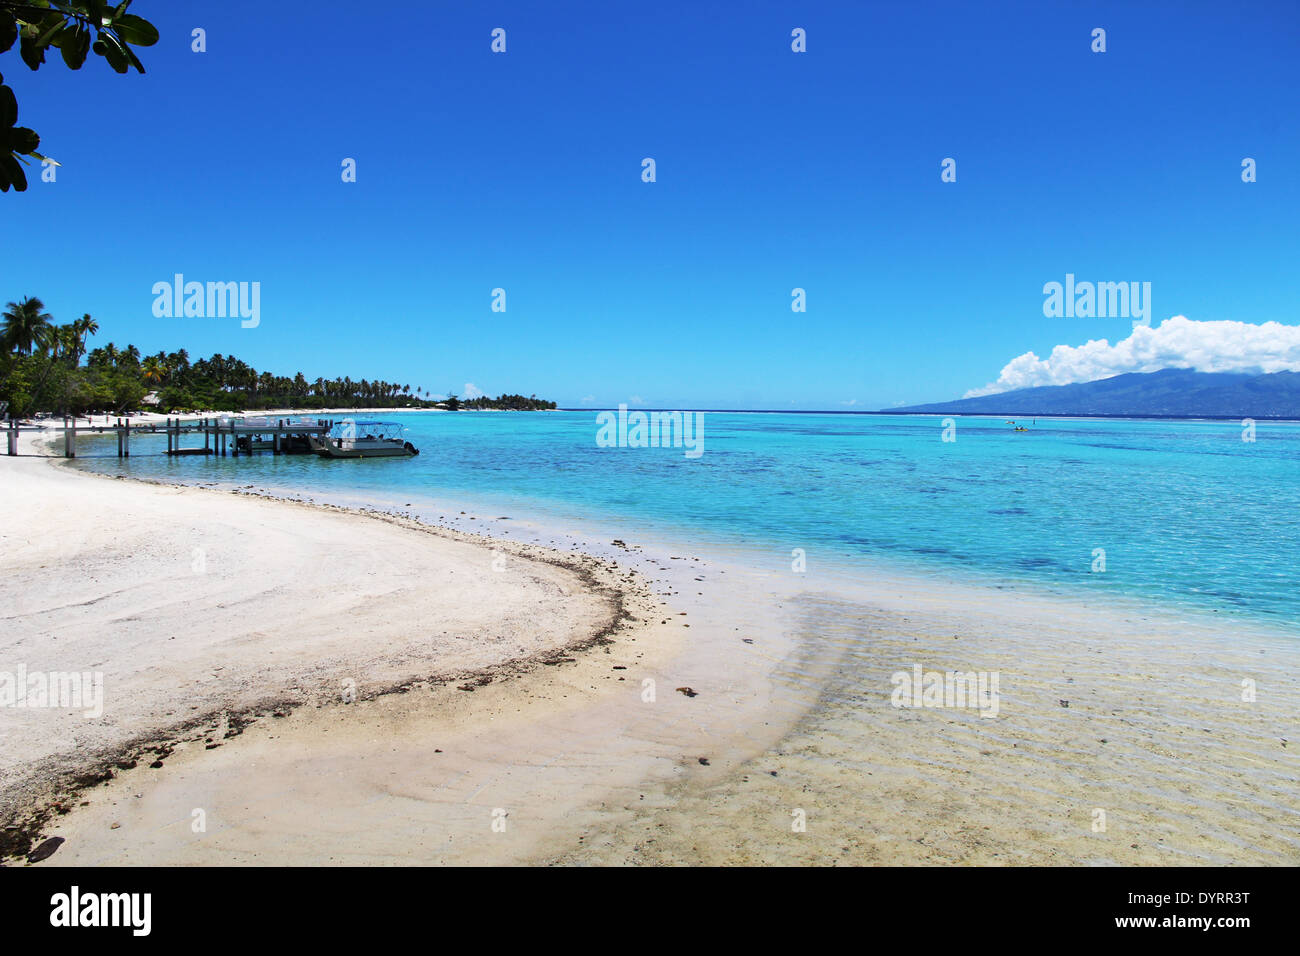 Einen idyllischen Blick auf einen Strand auf der Insel Moorea, Tahiti Stockfoto